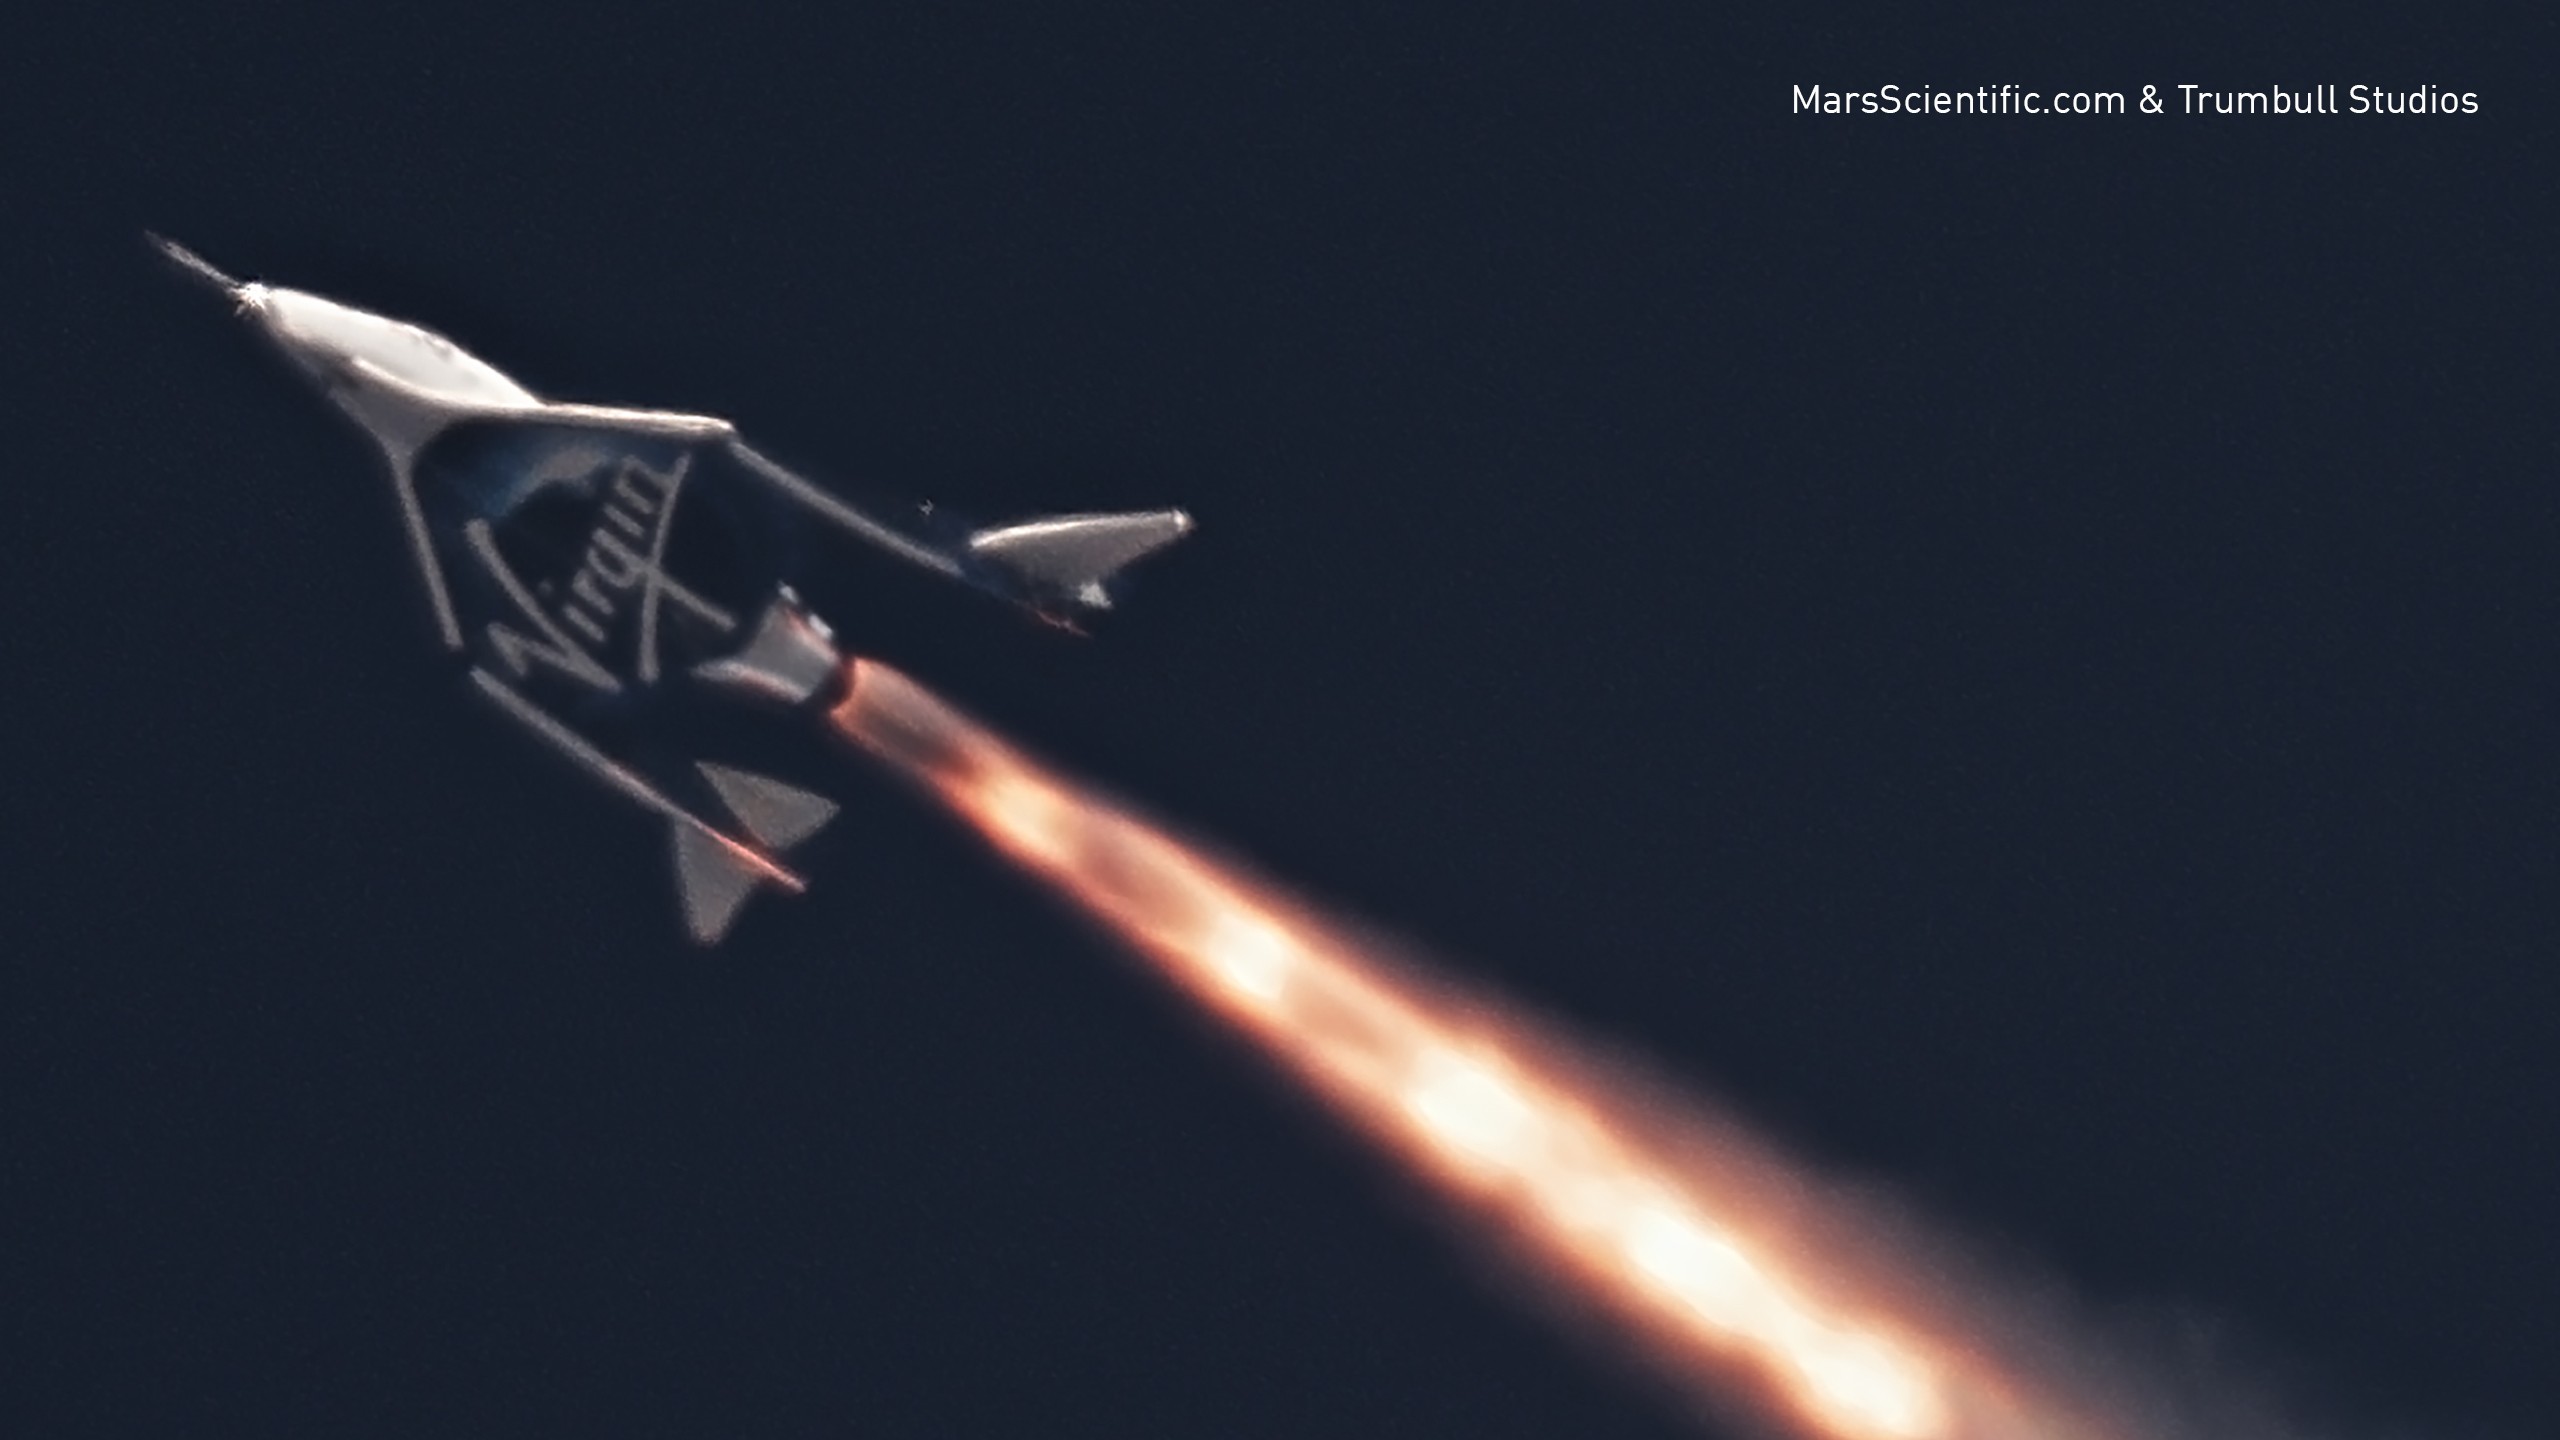 La Virgin Galactic ha portato a termine con successo, lo scorso 5 aprile, il primo test supersonico della nuova serie di velivoli con la VSS Unity.